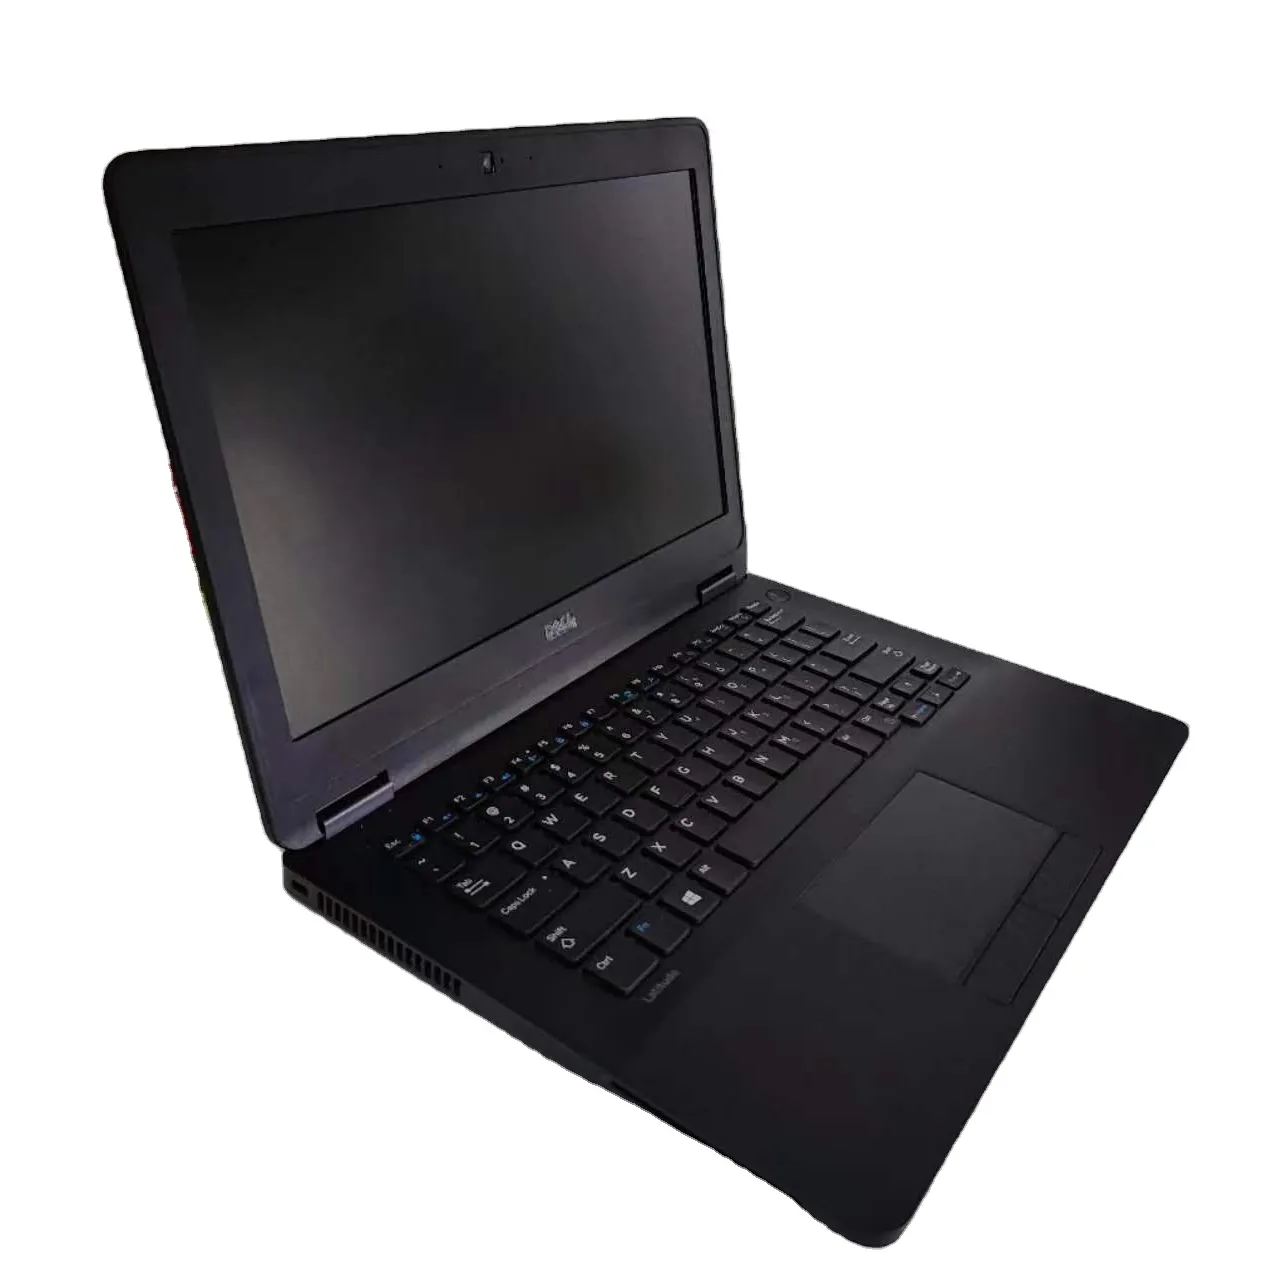 Toptan iş enlem 7270 çekirdek I5 düşük fiyat yüksek kalite ikinci el dizüstü kullanılan dizüstü bilgisayarlar Dell Laptop için satış